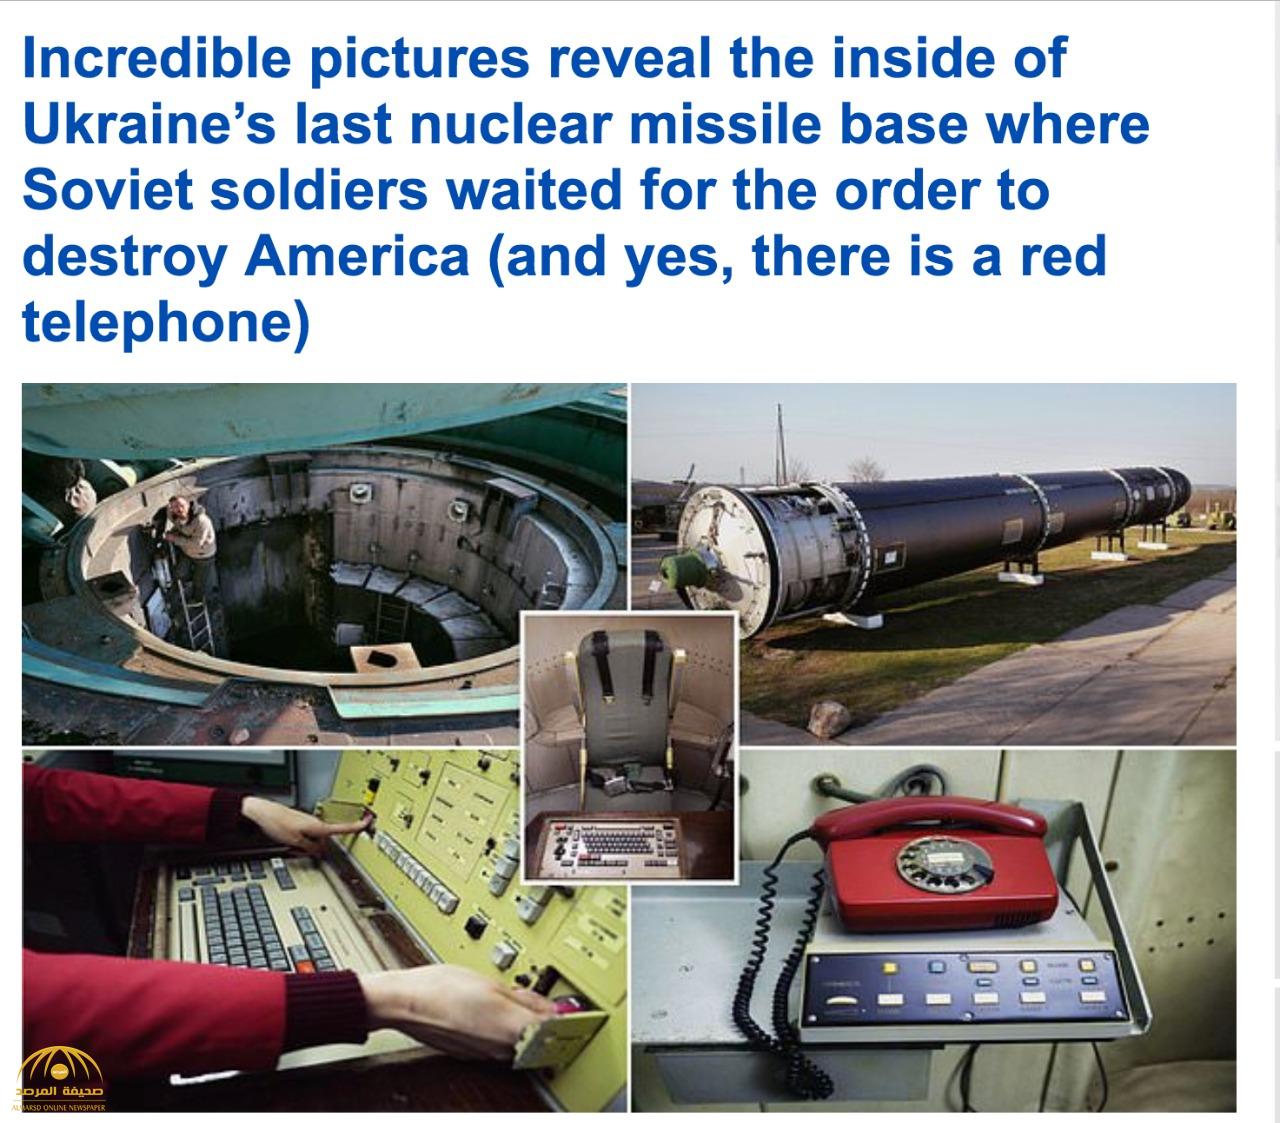 شاهد لأول مرة : لقطات مذهلة من آخر قاعدة صواريخ نووية للاتحاد السوفيتي في أوكرانيا!